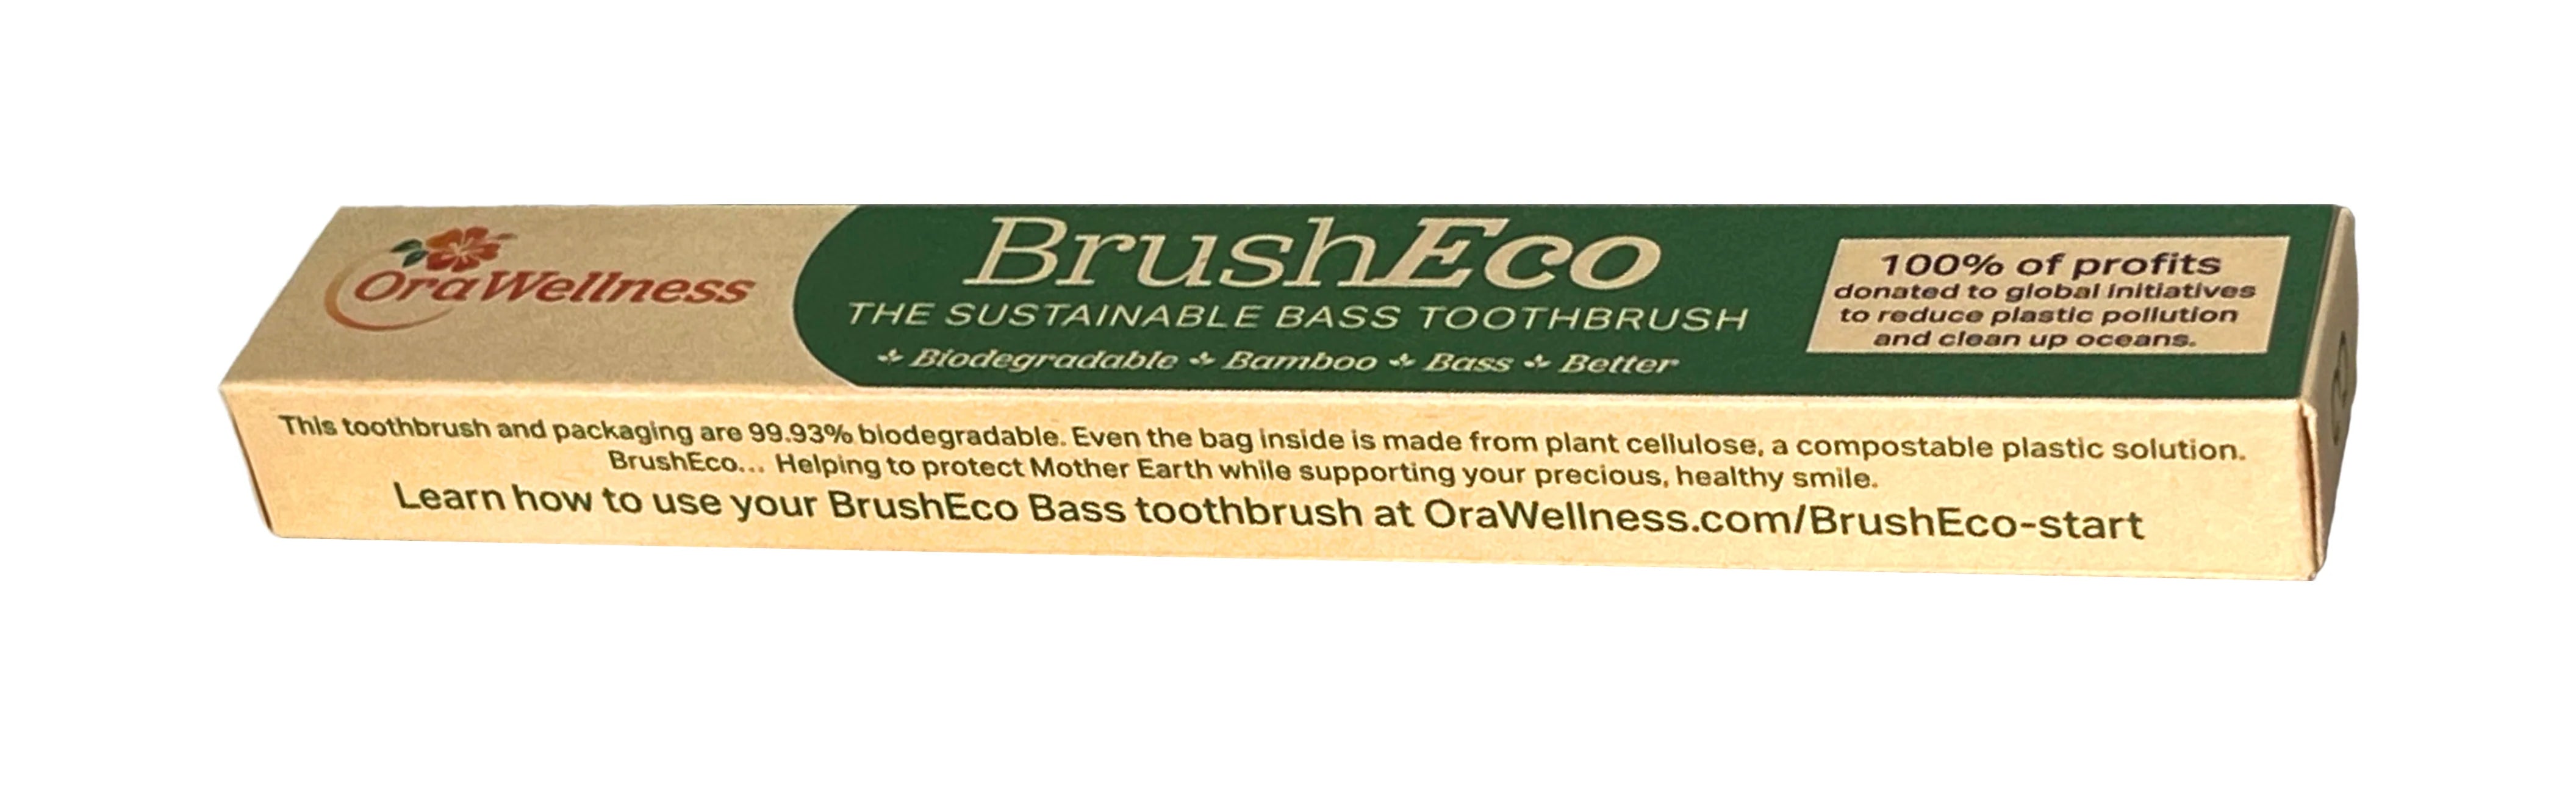 BrushEco - The Sustainable Bass Toothbrush